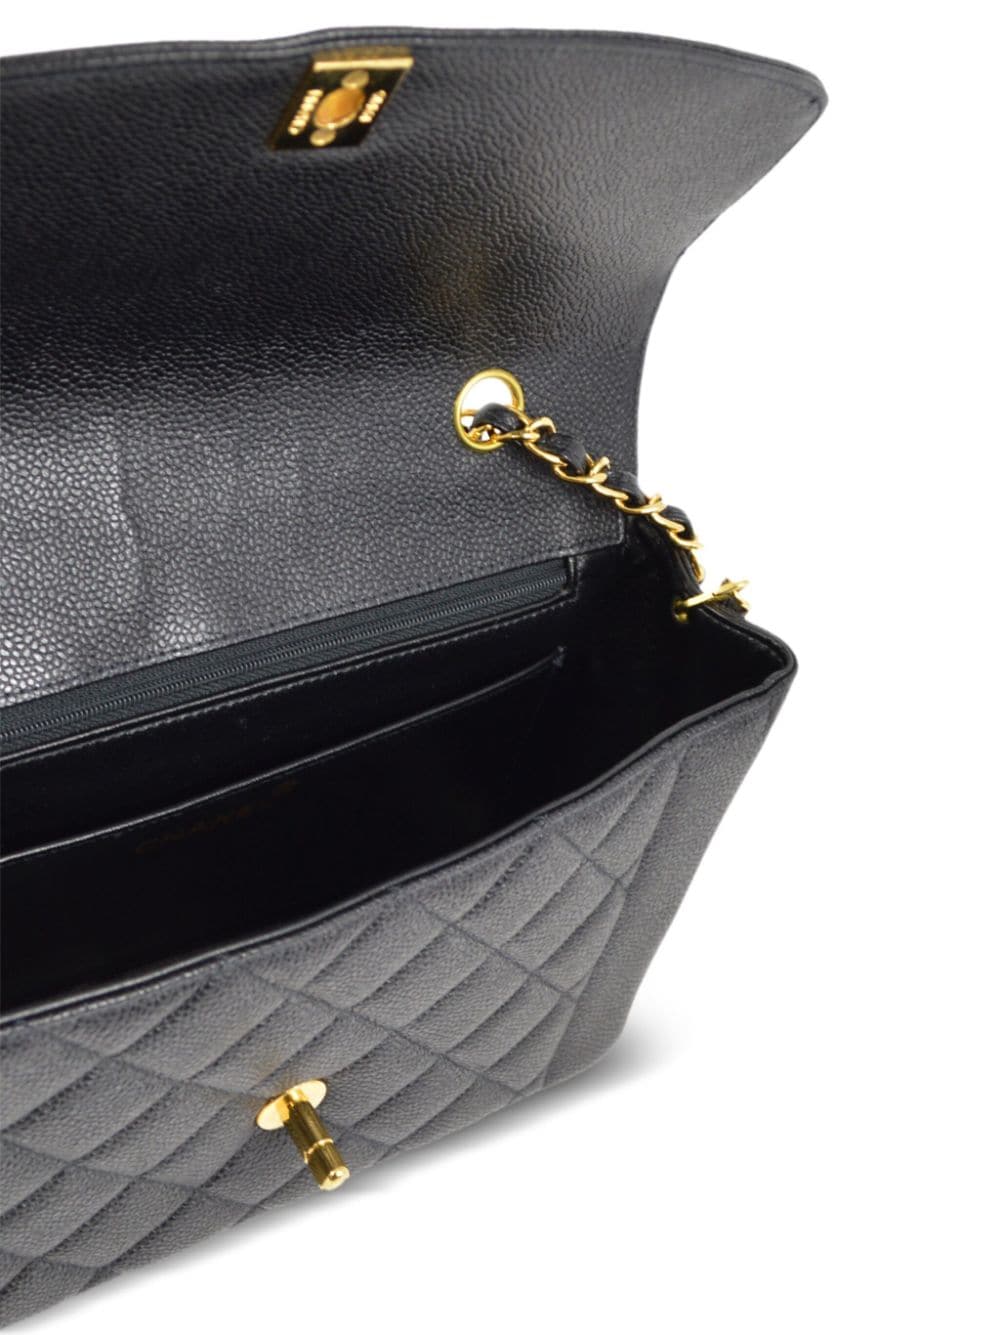 Pre-owned Chanel 1998 Medium Diana Shoulder Bag In Black